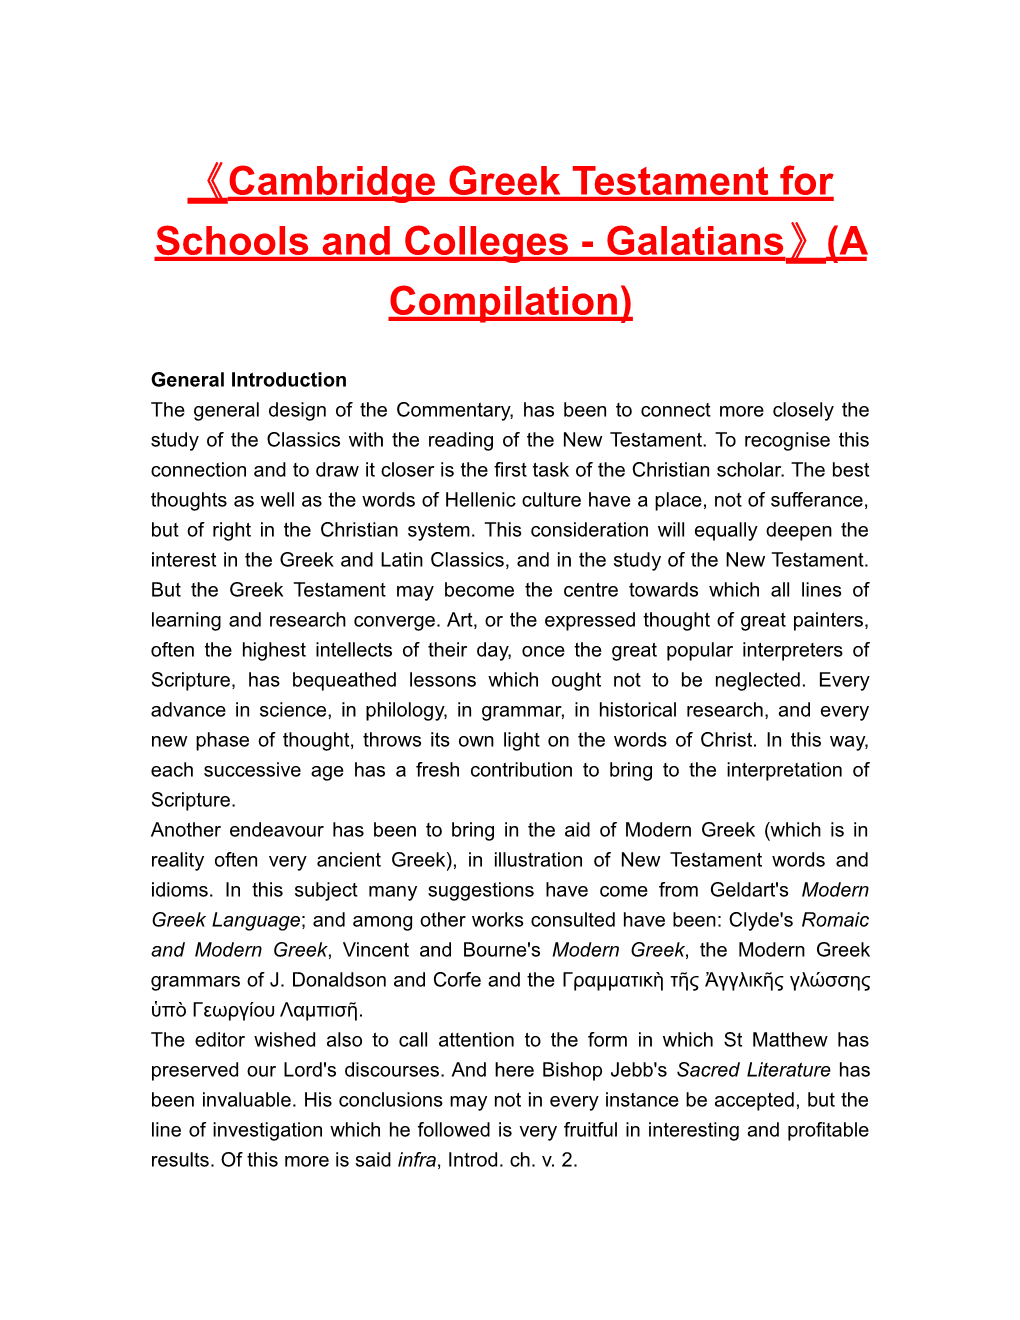 Cambridgegreek Testament for Schools and Colleges-Galatians (A Compilation)